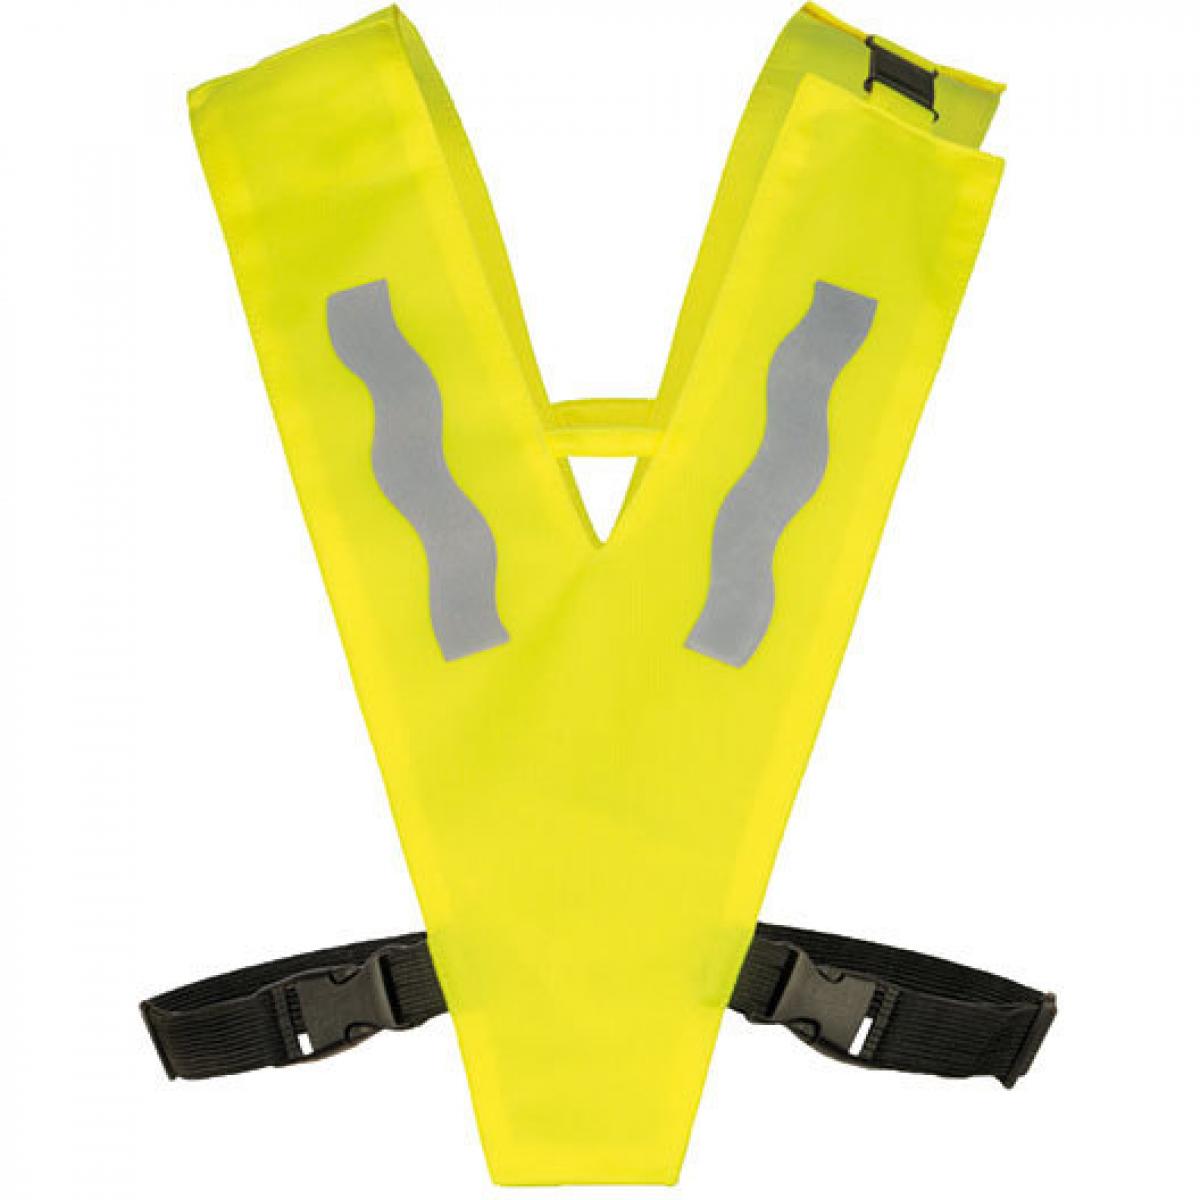 Hersteller: Korntex Herstellernummer: KT100S/XS Artikelbezeichnung: Kinder Safety Collar with Safety Clasp for Kids Farbe: Signal Yellow